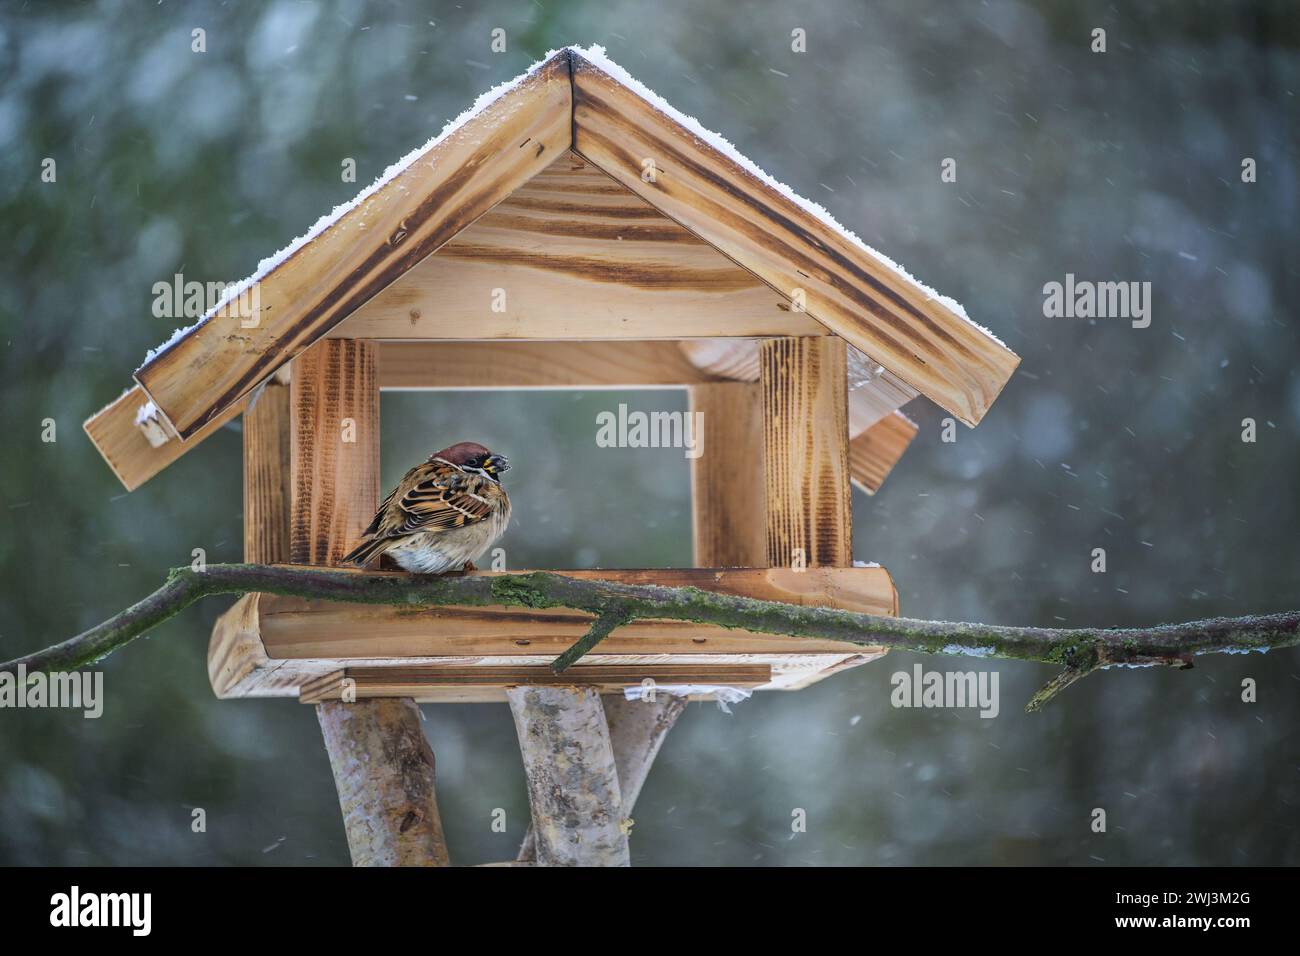 Verfluchter Baumsperling, der in einem hölzernen Vogelfutterhaus sitzt und an einem kalten, schneebedeckten Wintertag Sonnenblumenkerne isst, Kopie s Stockfoto